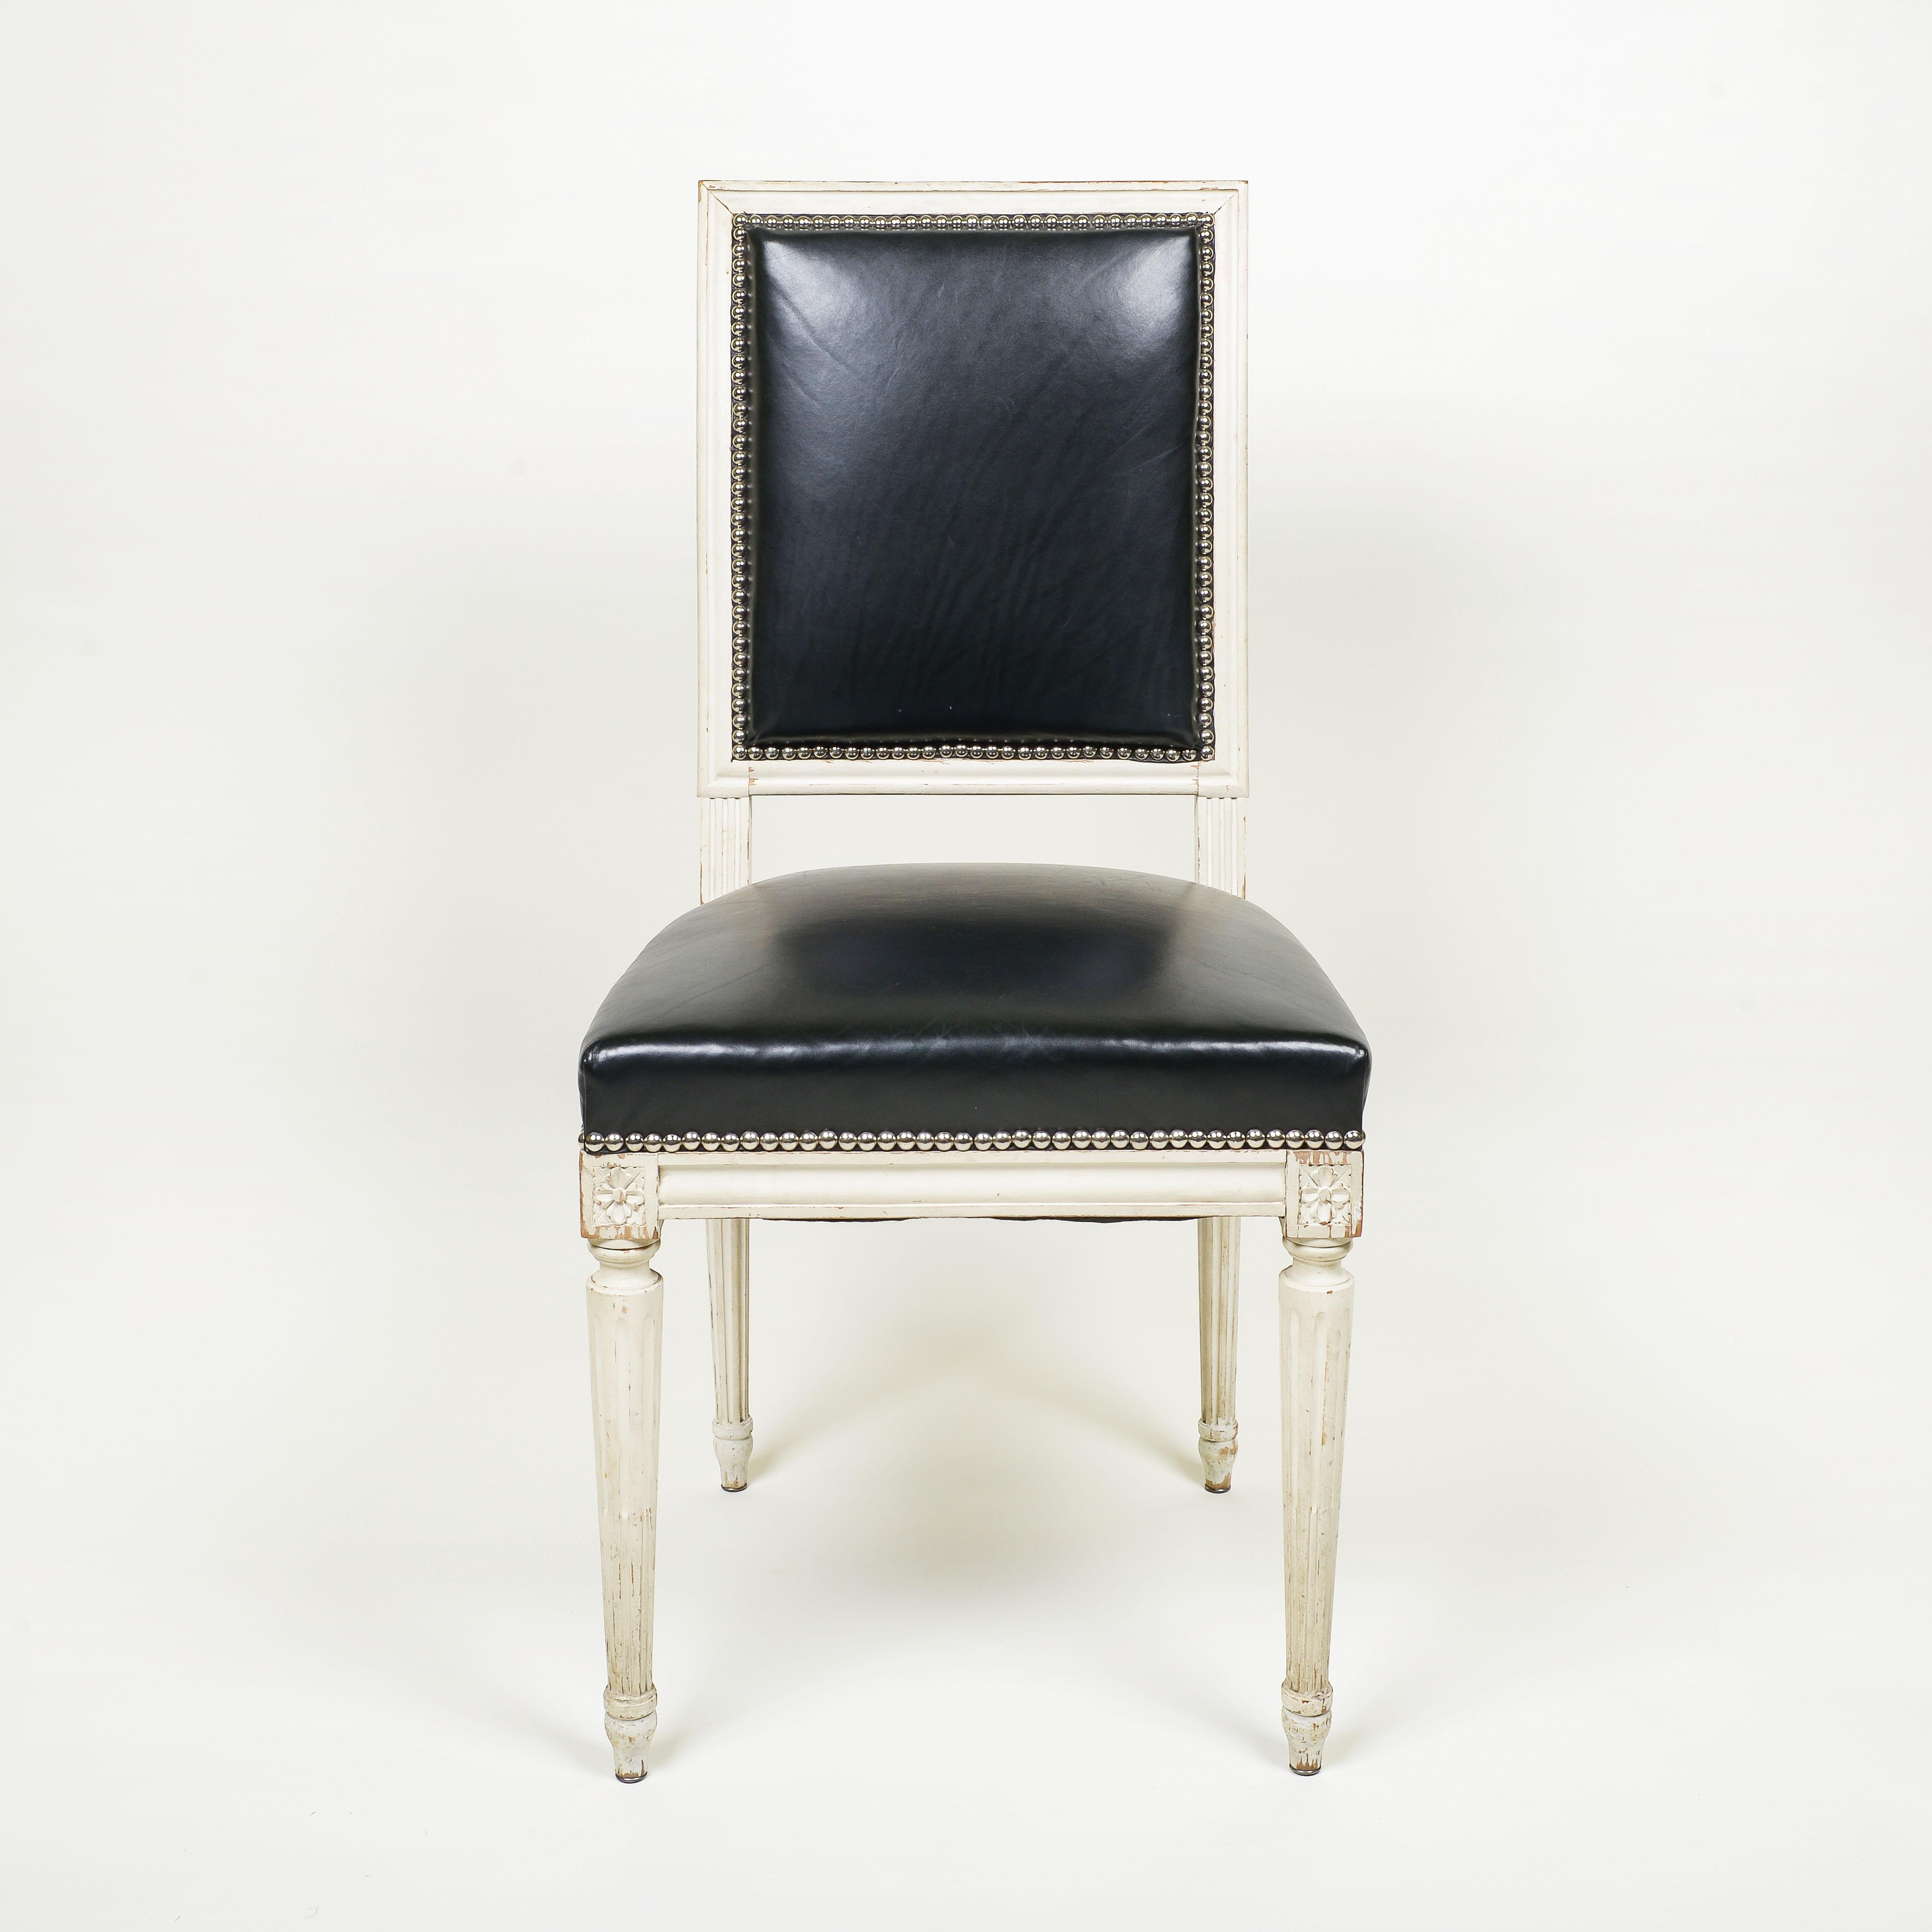 Chaque chaise est tapissée de cuir noir avec garniture en tête de clou ; elle repose sur des pieds cannelés, ronds et effilés.